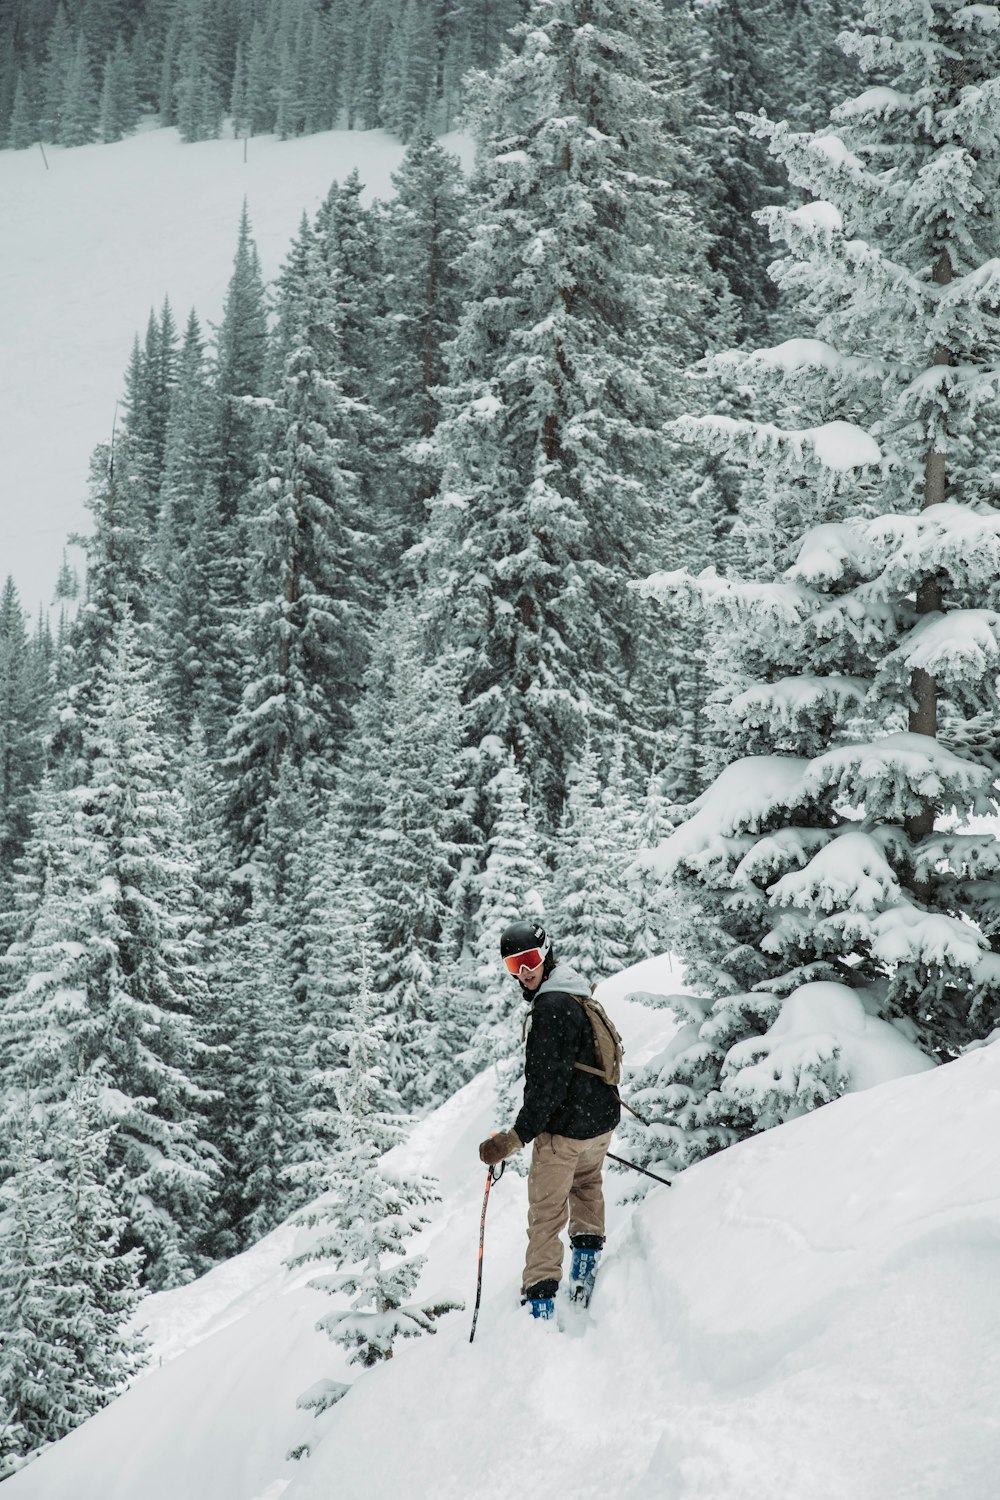 눈 덮인 언덕에 서 있는 스키를 탄 사람